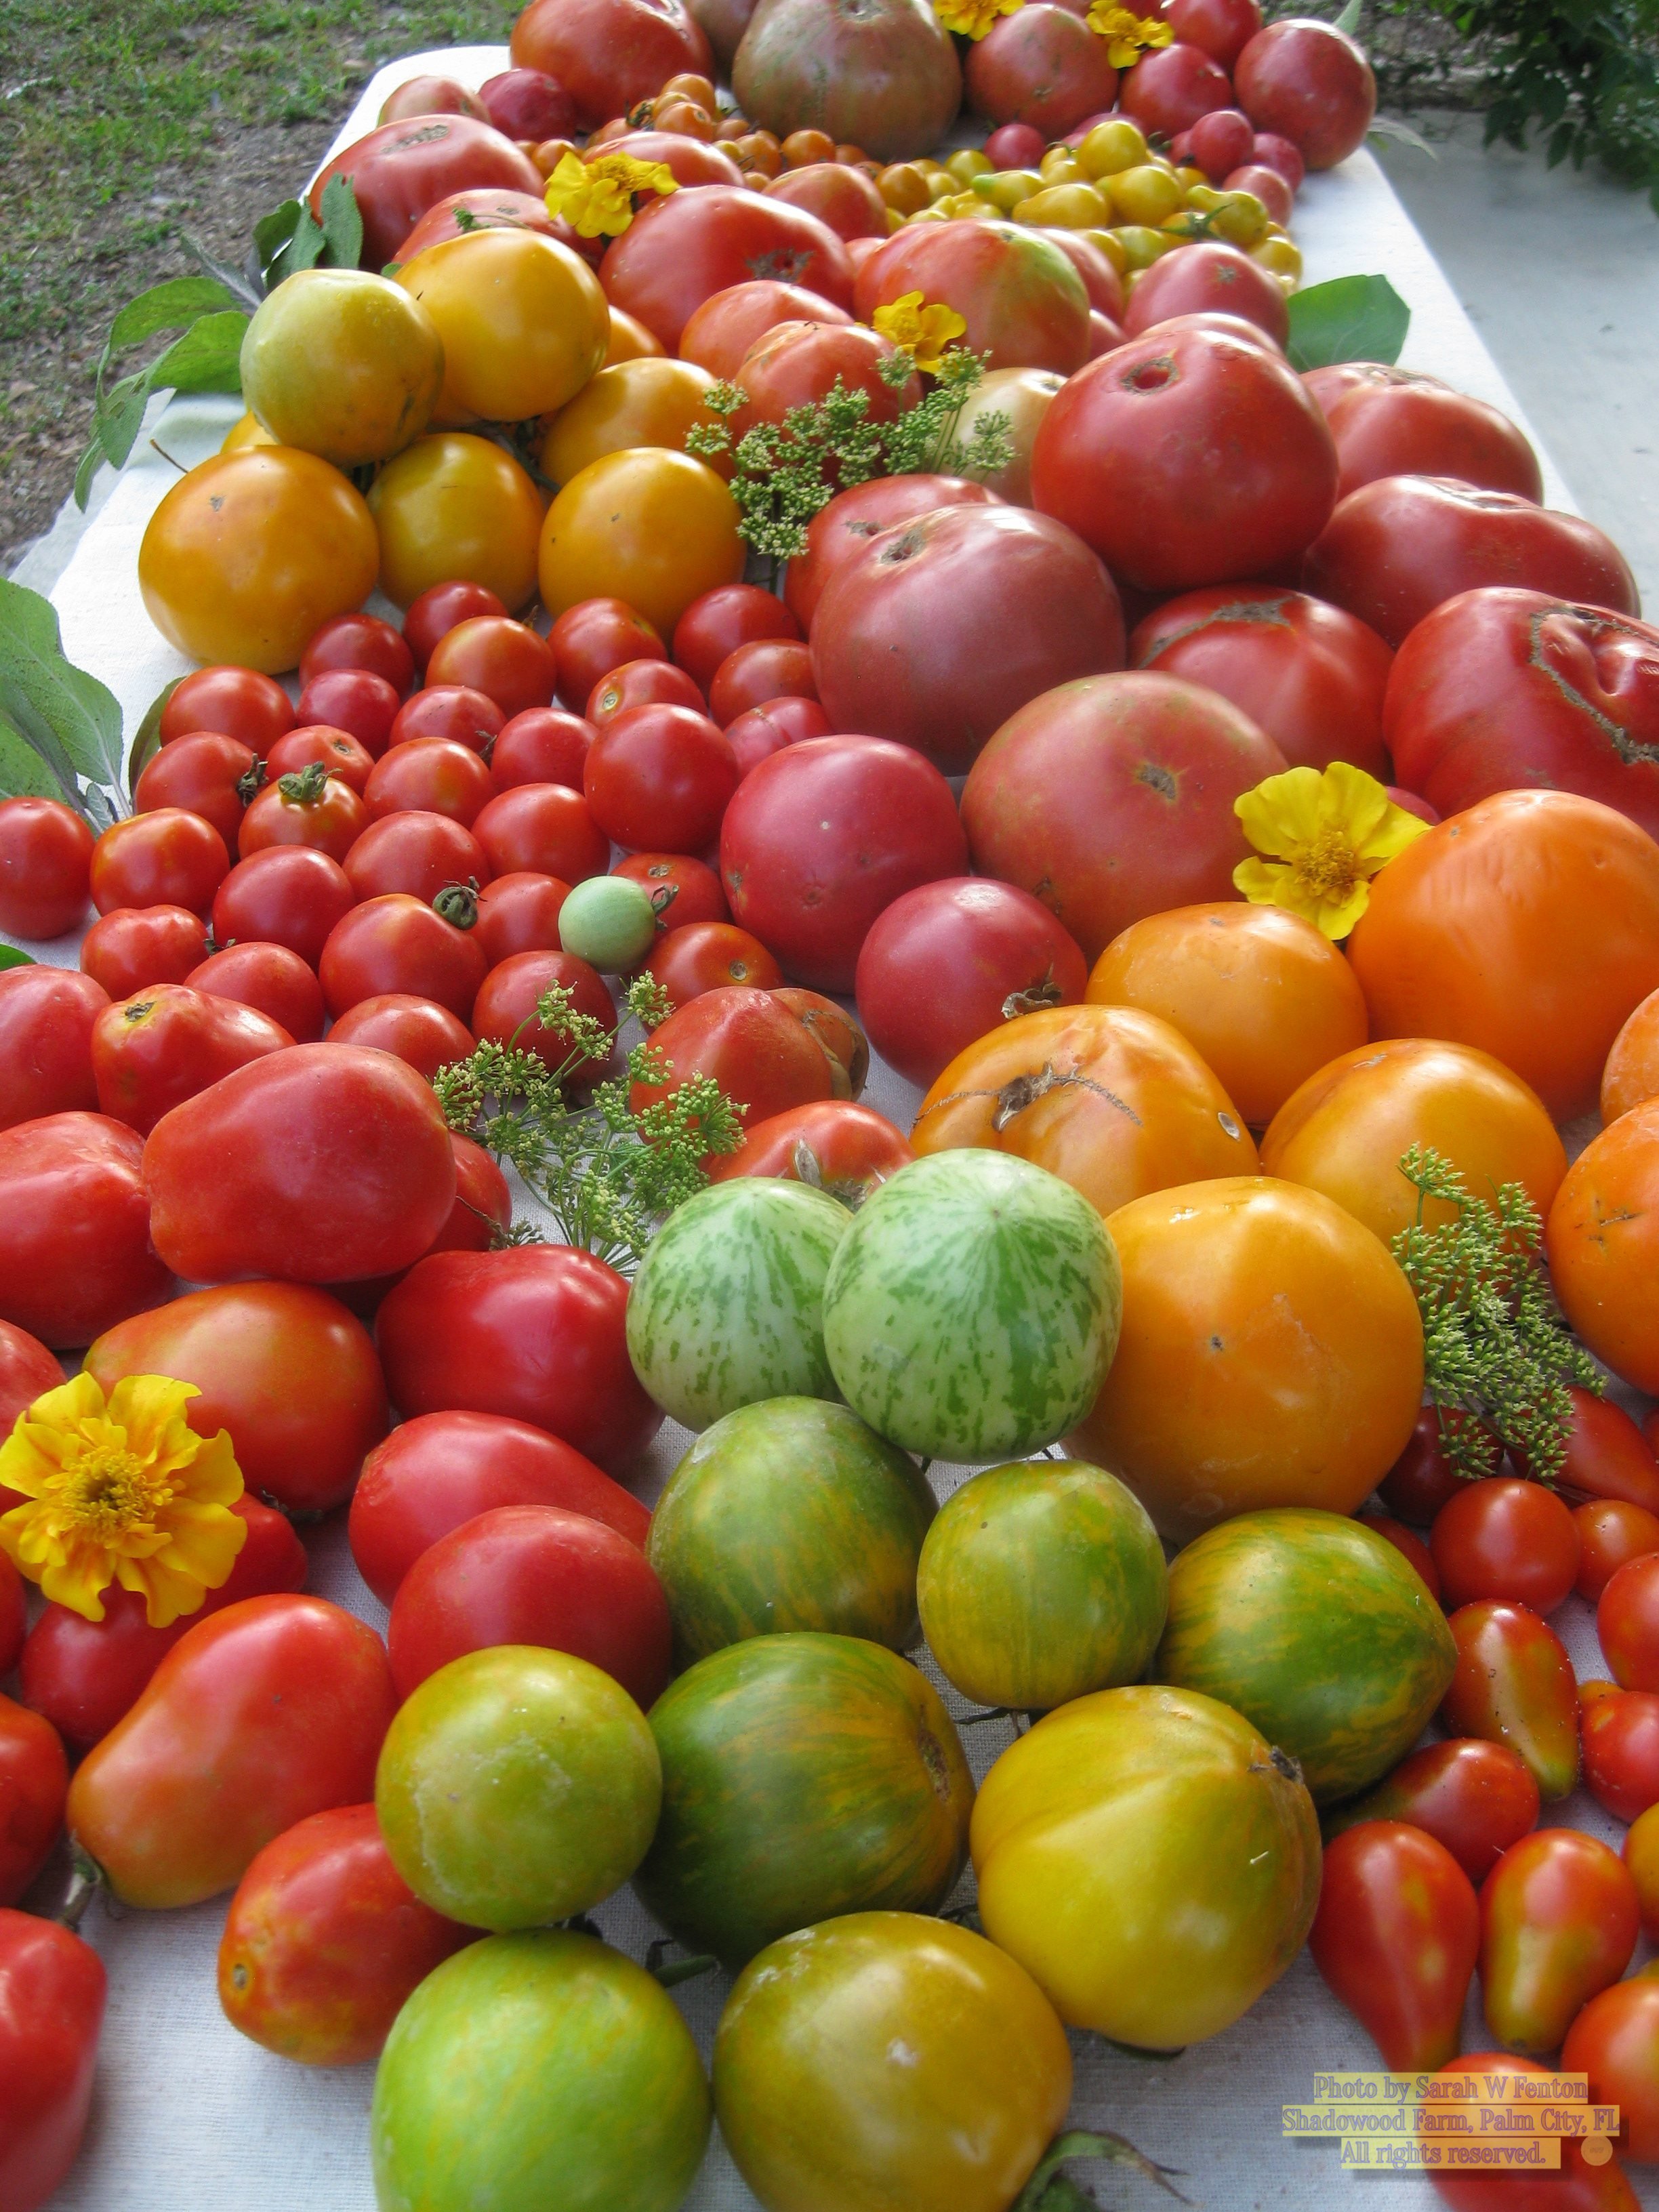 tomatoesbf.jpg